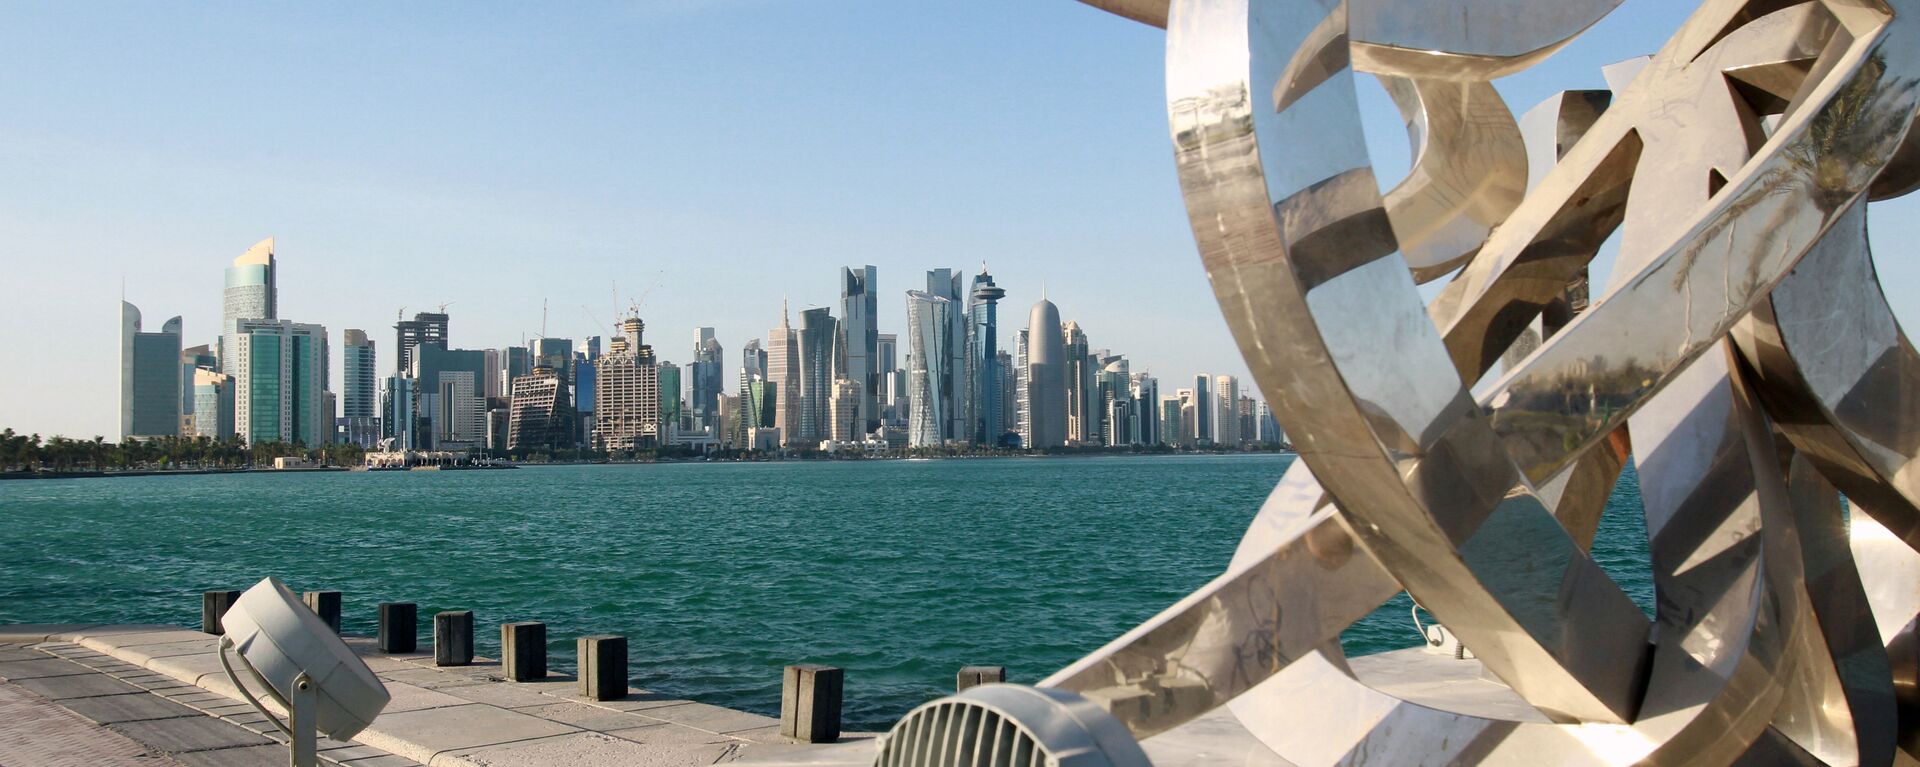 مناظر عامة للمدن العربية - الدوحة، قطر 5 يونيو 2017  - سبوتنيك عربي, 1920, 01.01.2022